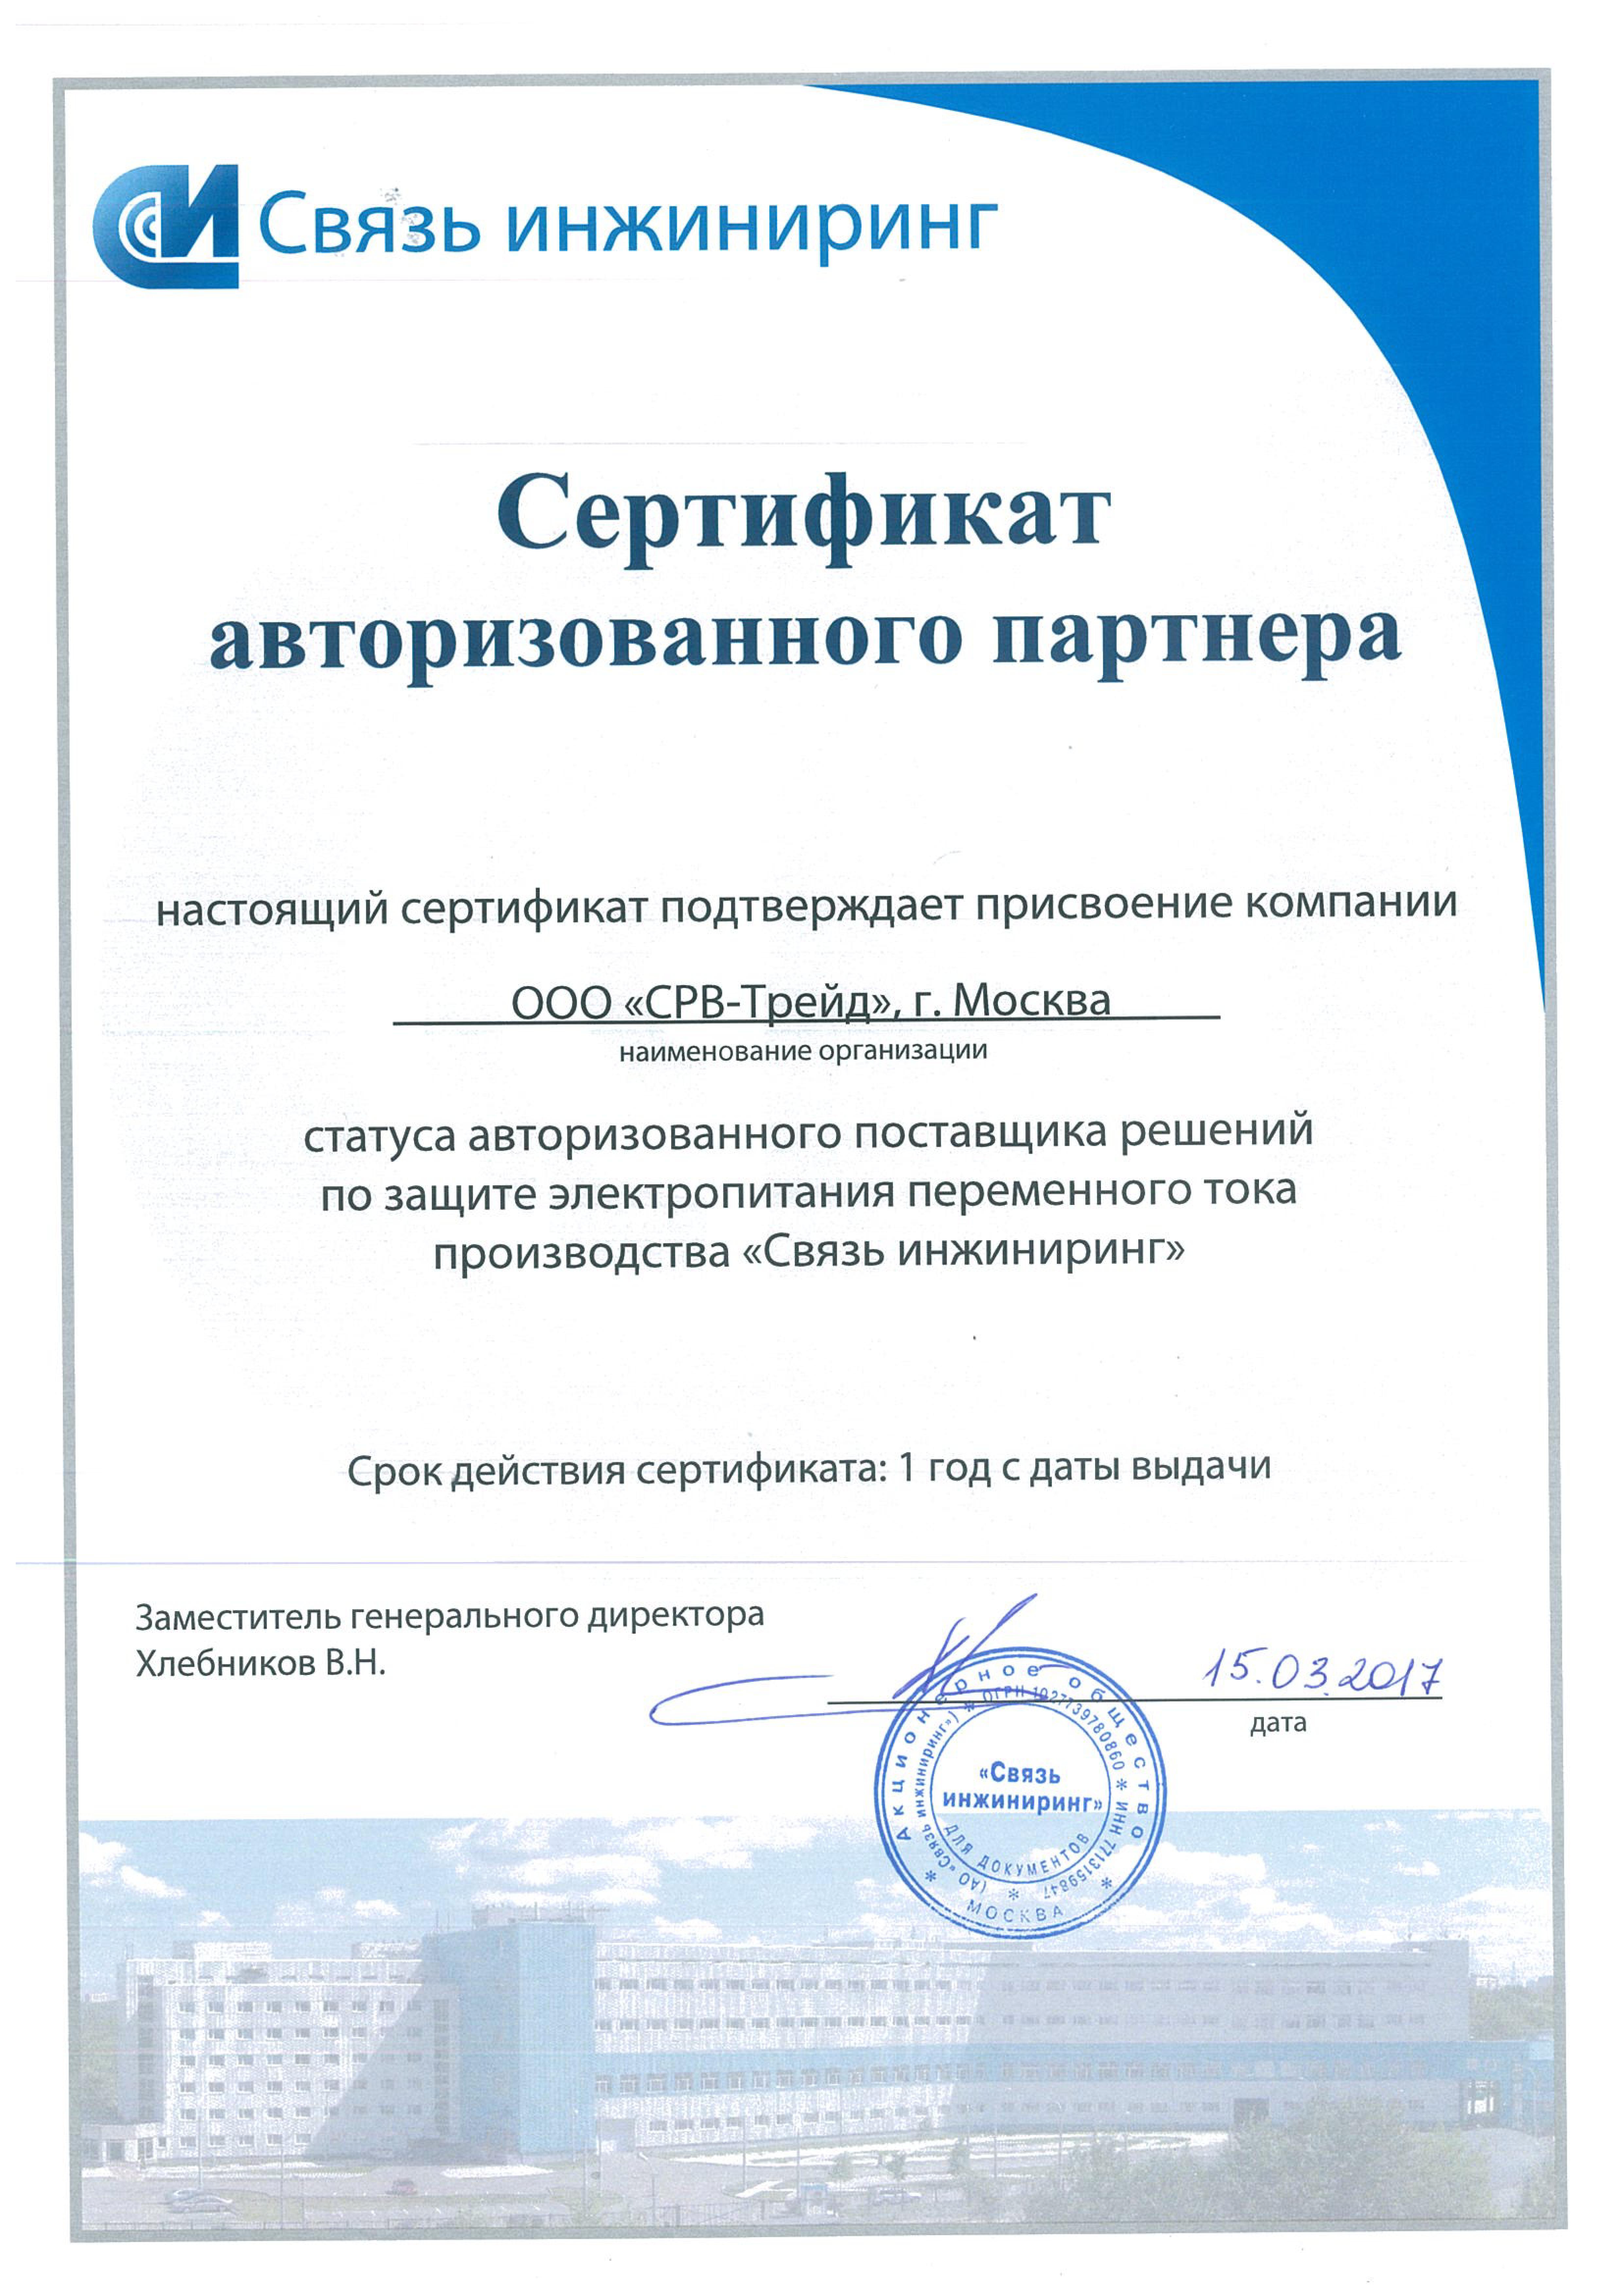 Сертификат SRV-TRADE как партнера Связь Инжиниринг